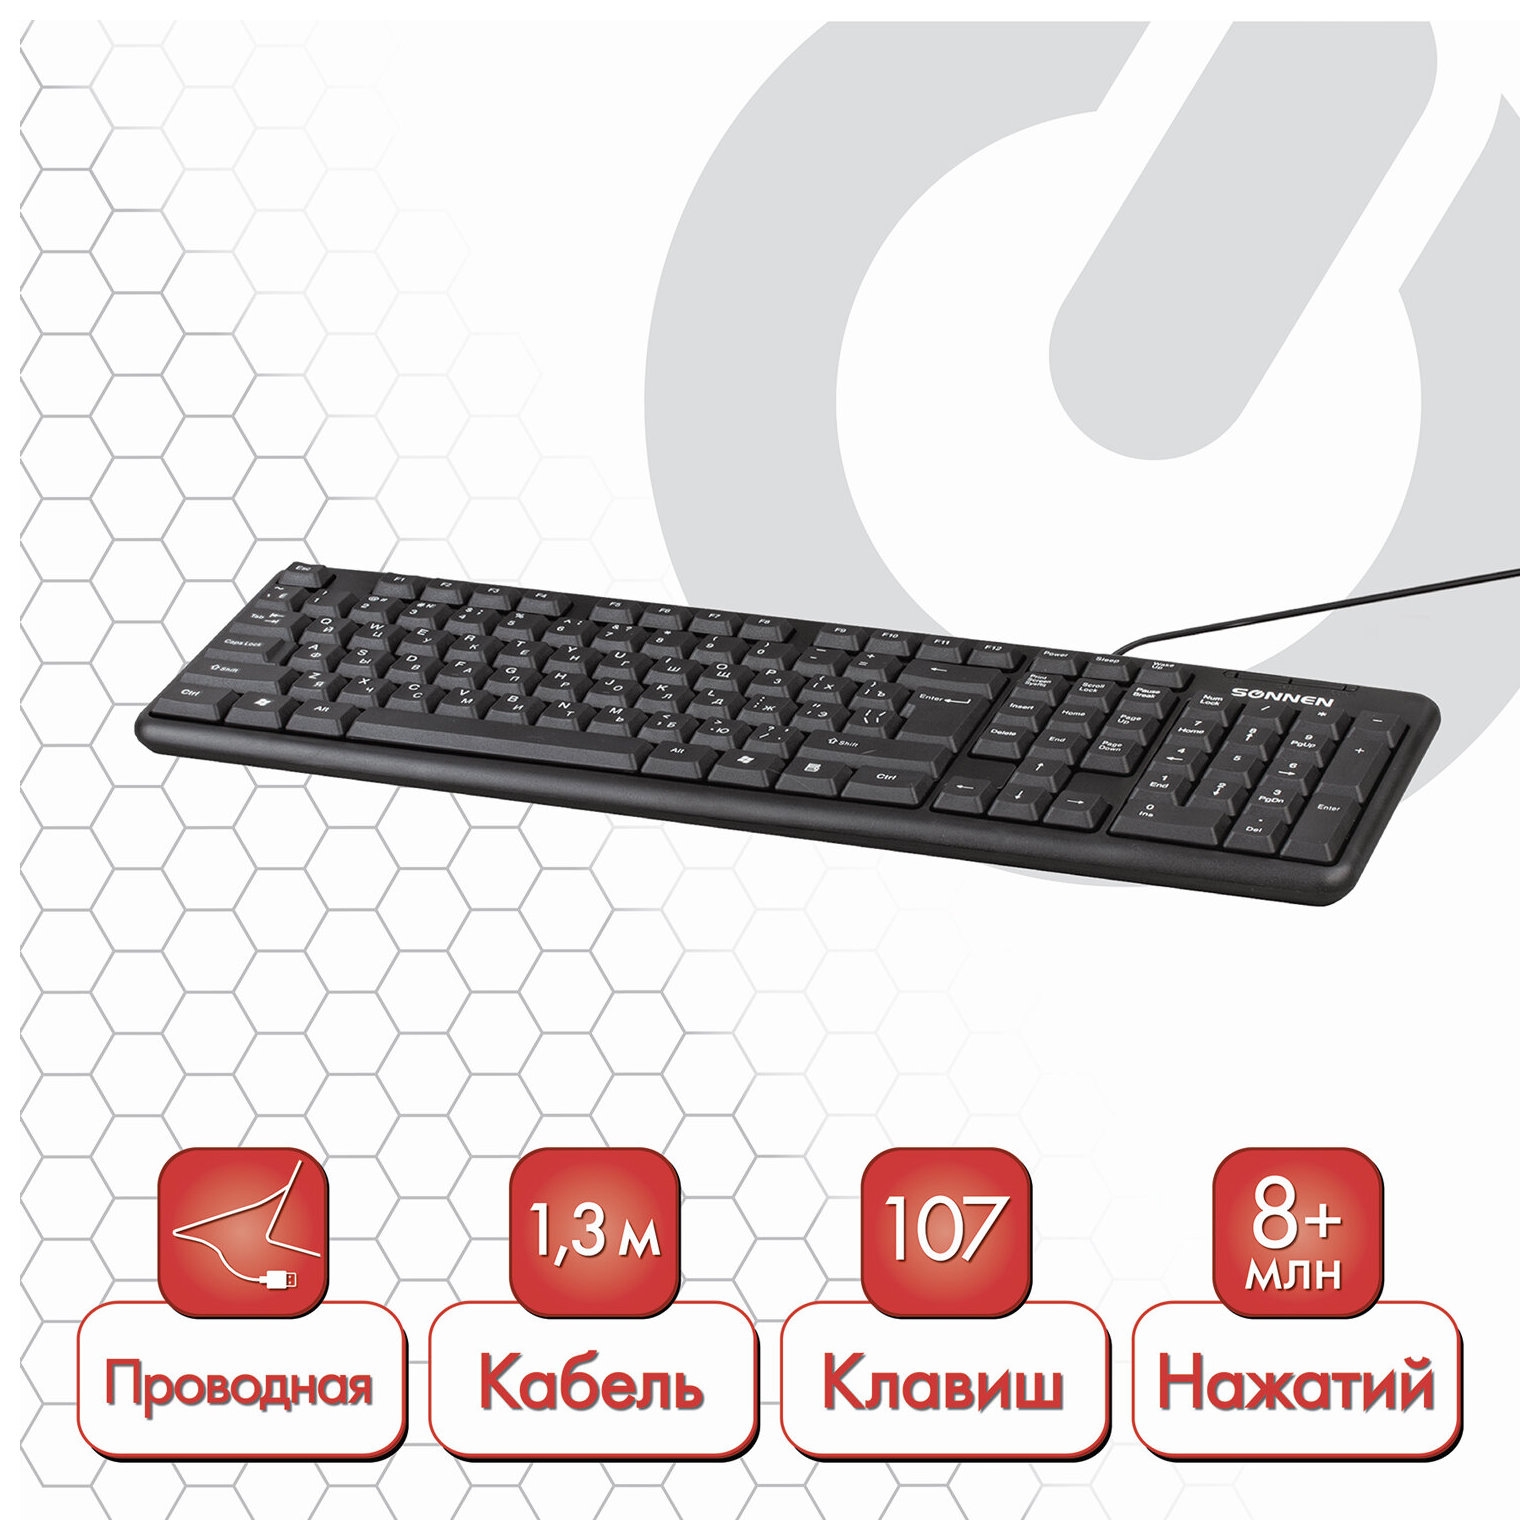 Клавиатура проводная Sonnen Kb-8136, Usb, 107 клавиш, черная, 512651